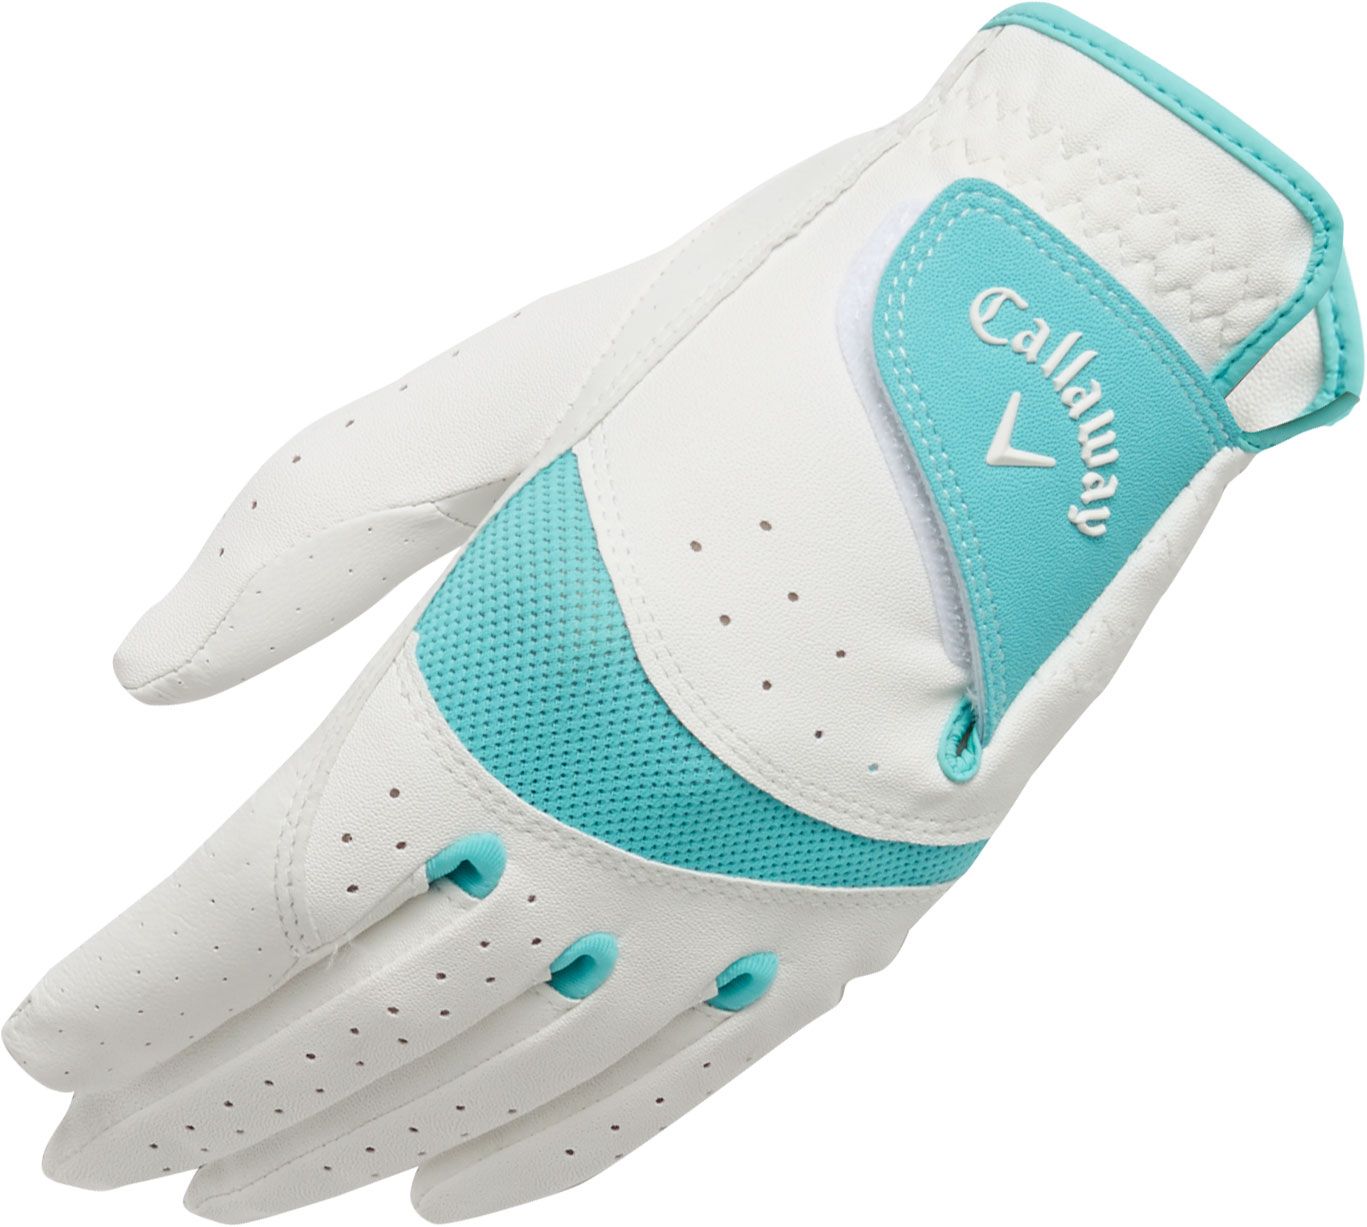 Callaway Junior X-Tech Golf Glove